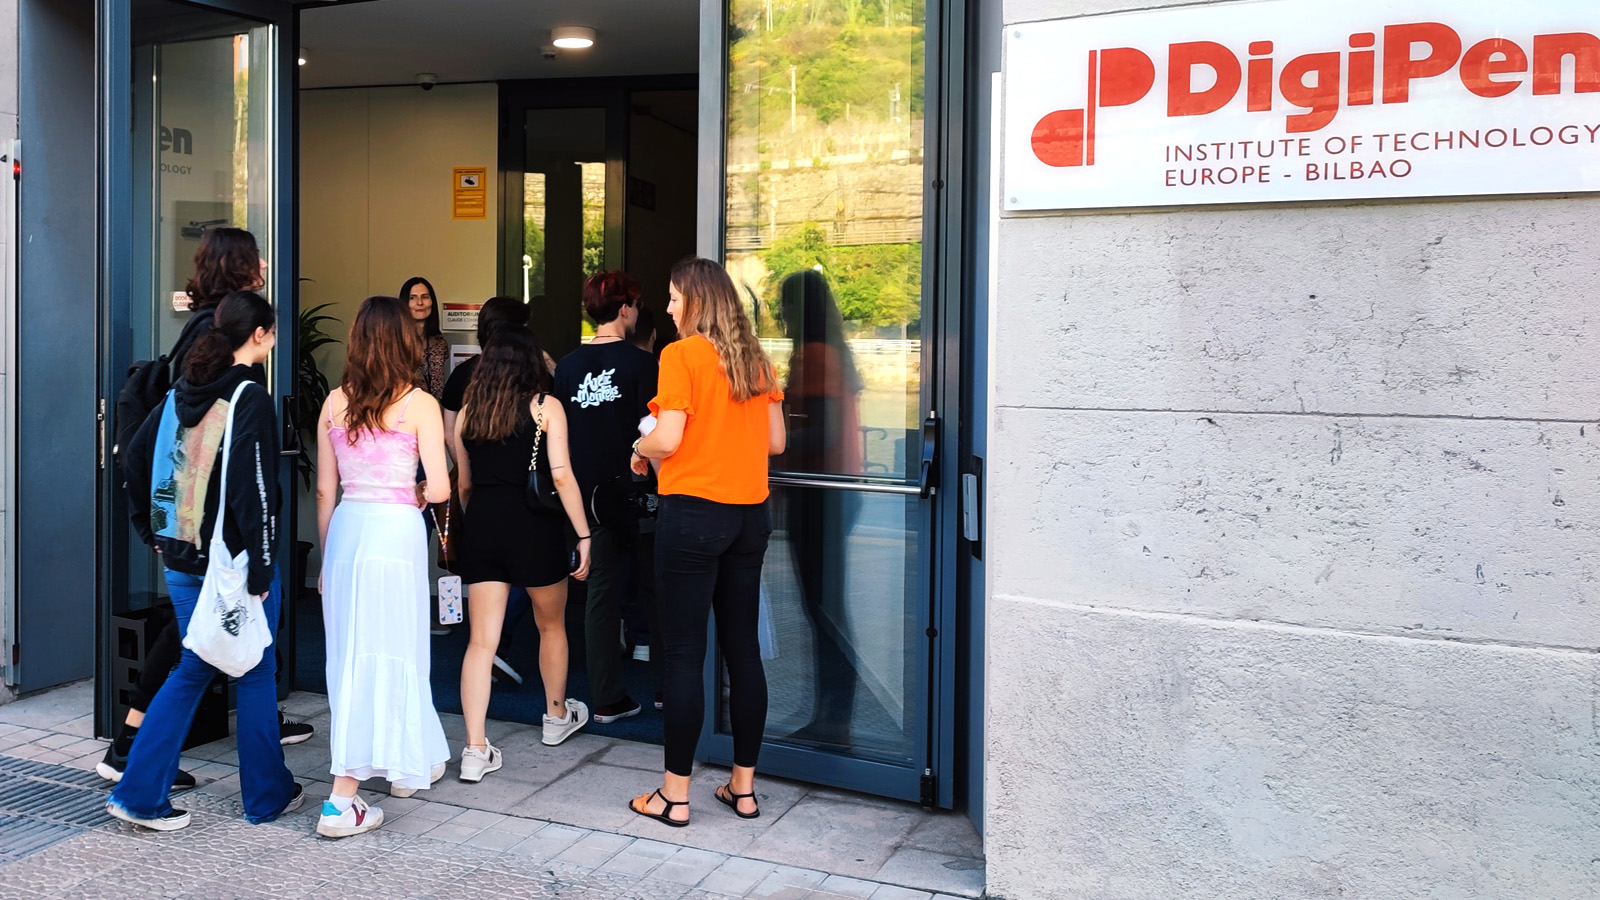 Alumnado de primer curso en la entrada de Digipen Europe-Bilbao atendidos por el personal de administración.